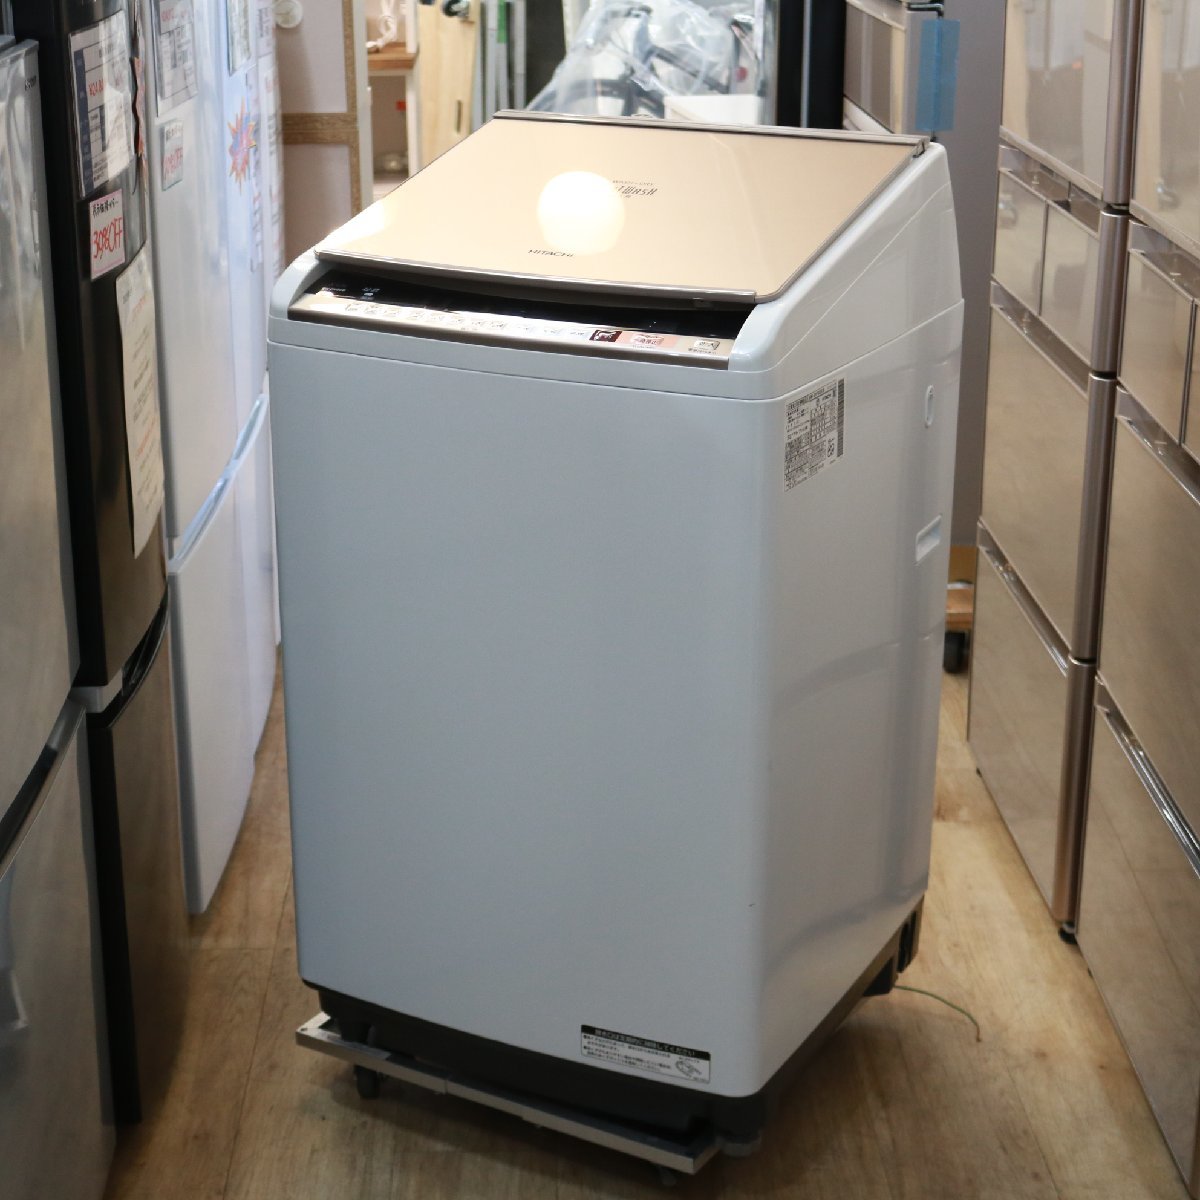 横浜市港北区にて 日立 洗濯乾燥機  BW-DV80B 2018年製 を出張買取させて頂きました。